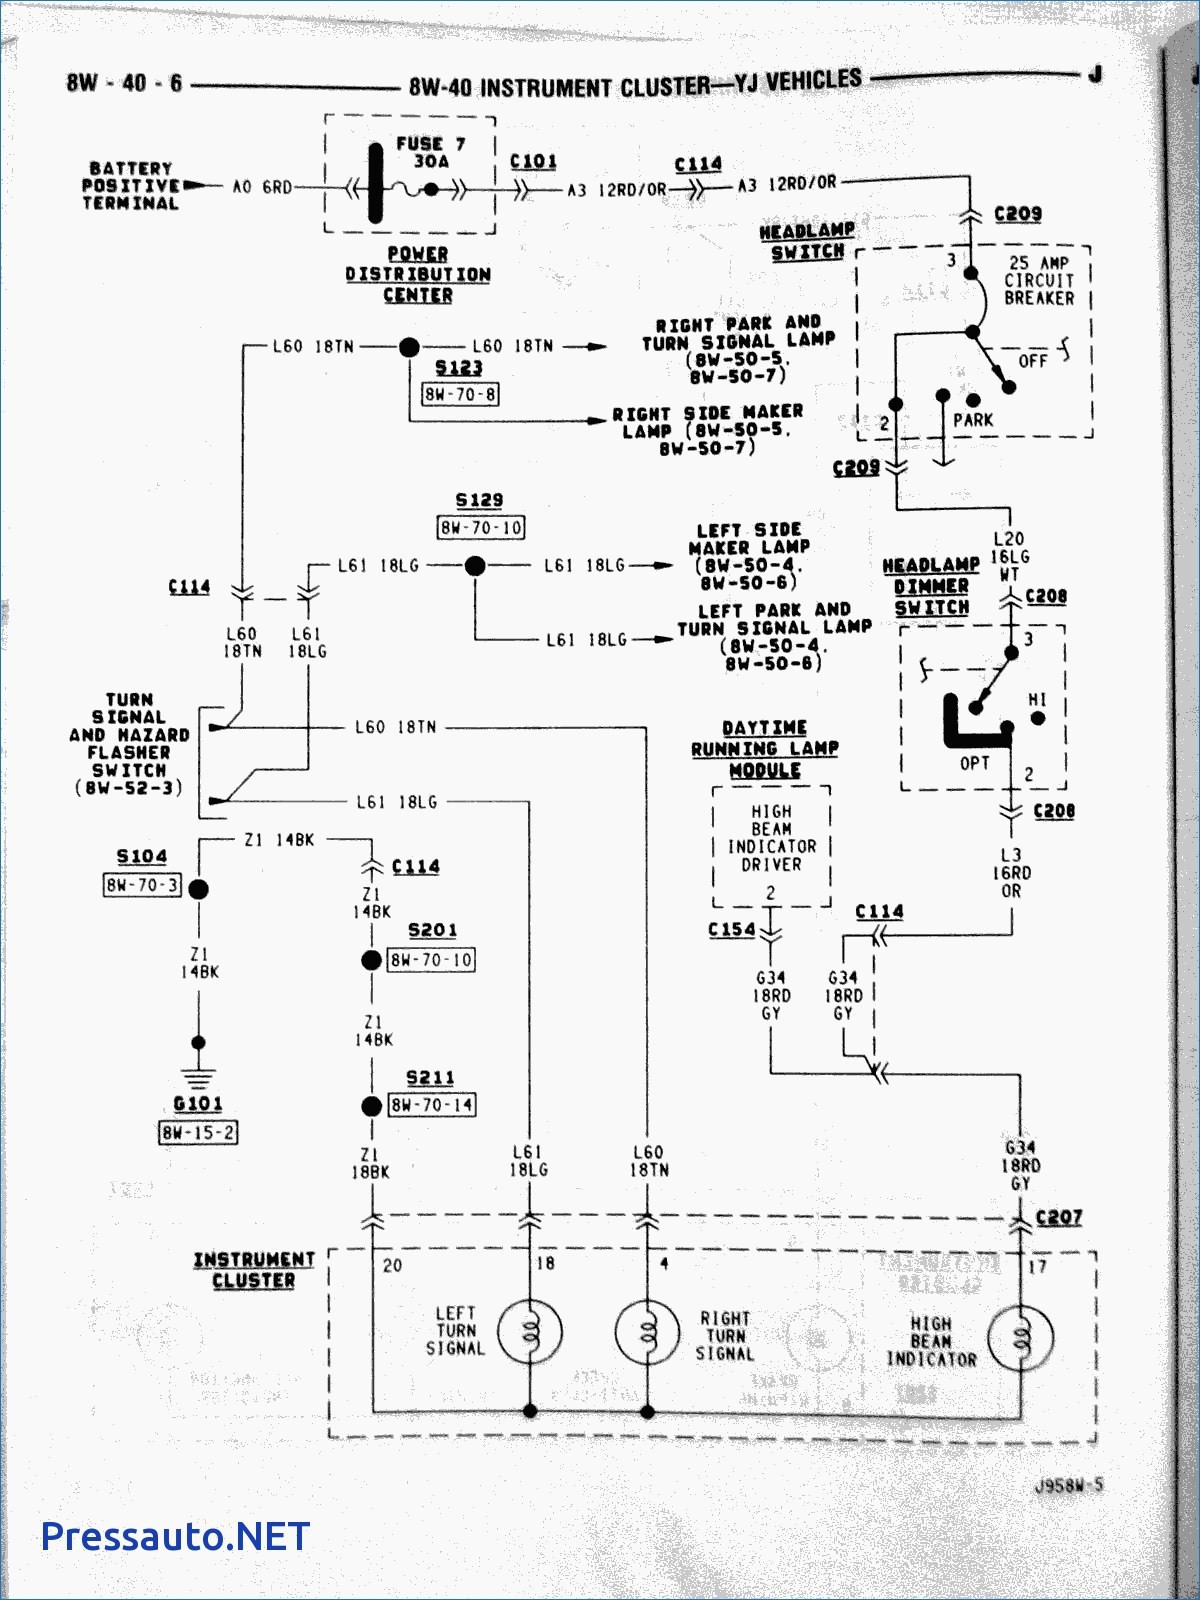 Car Horn Wiring Diagram Car Diagram Car Horn Wiring Diagram 1952 Buick Car Horn Wiring Of Car Horn Wiring Diagram